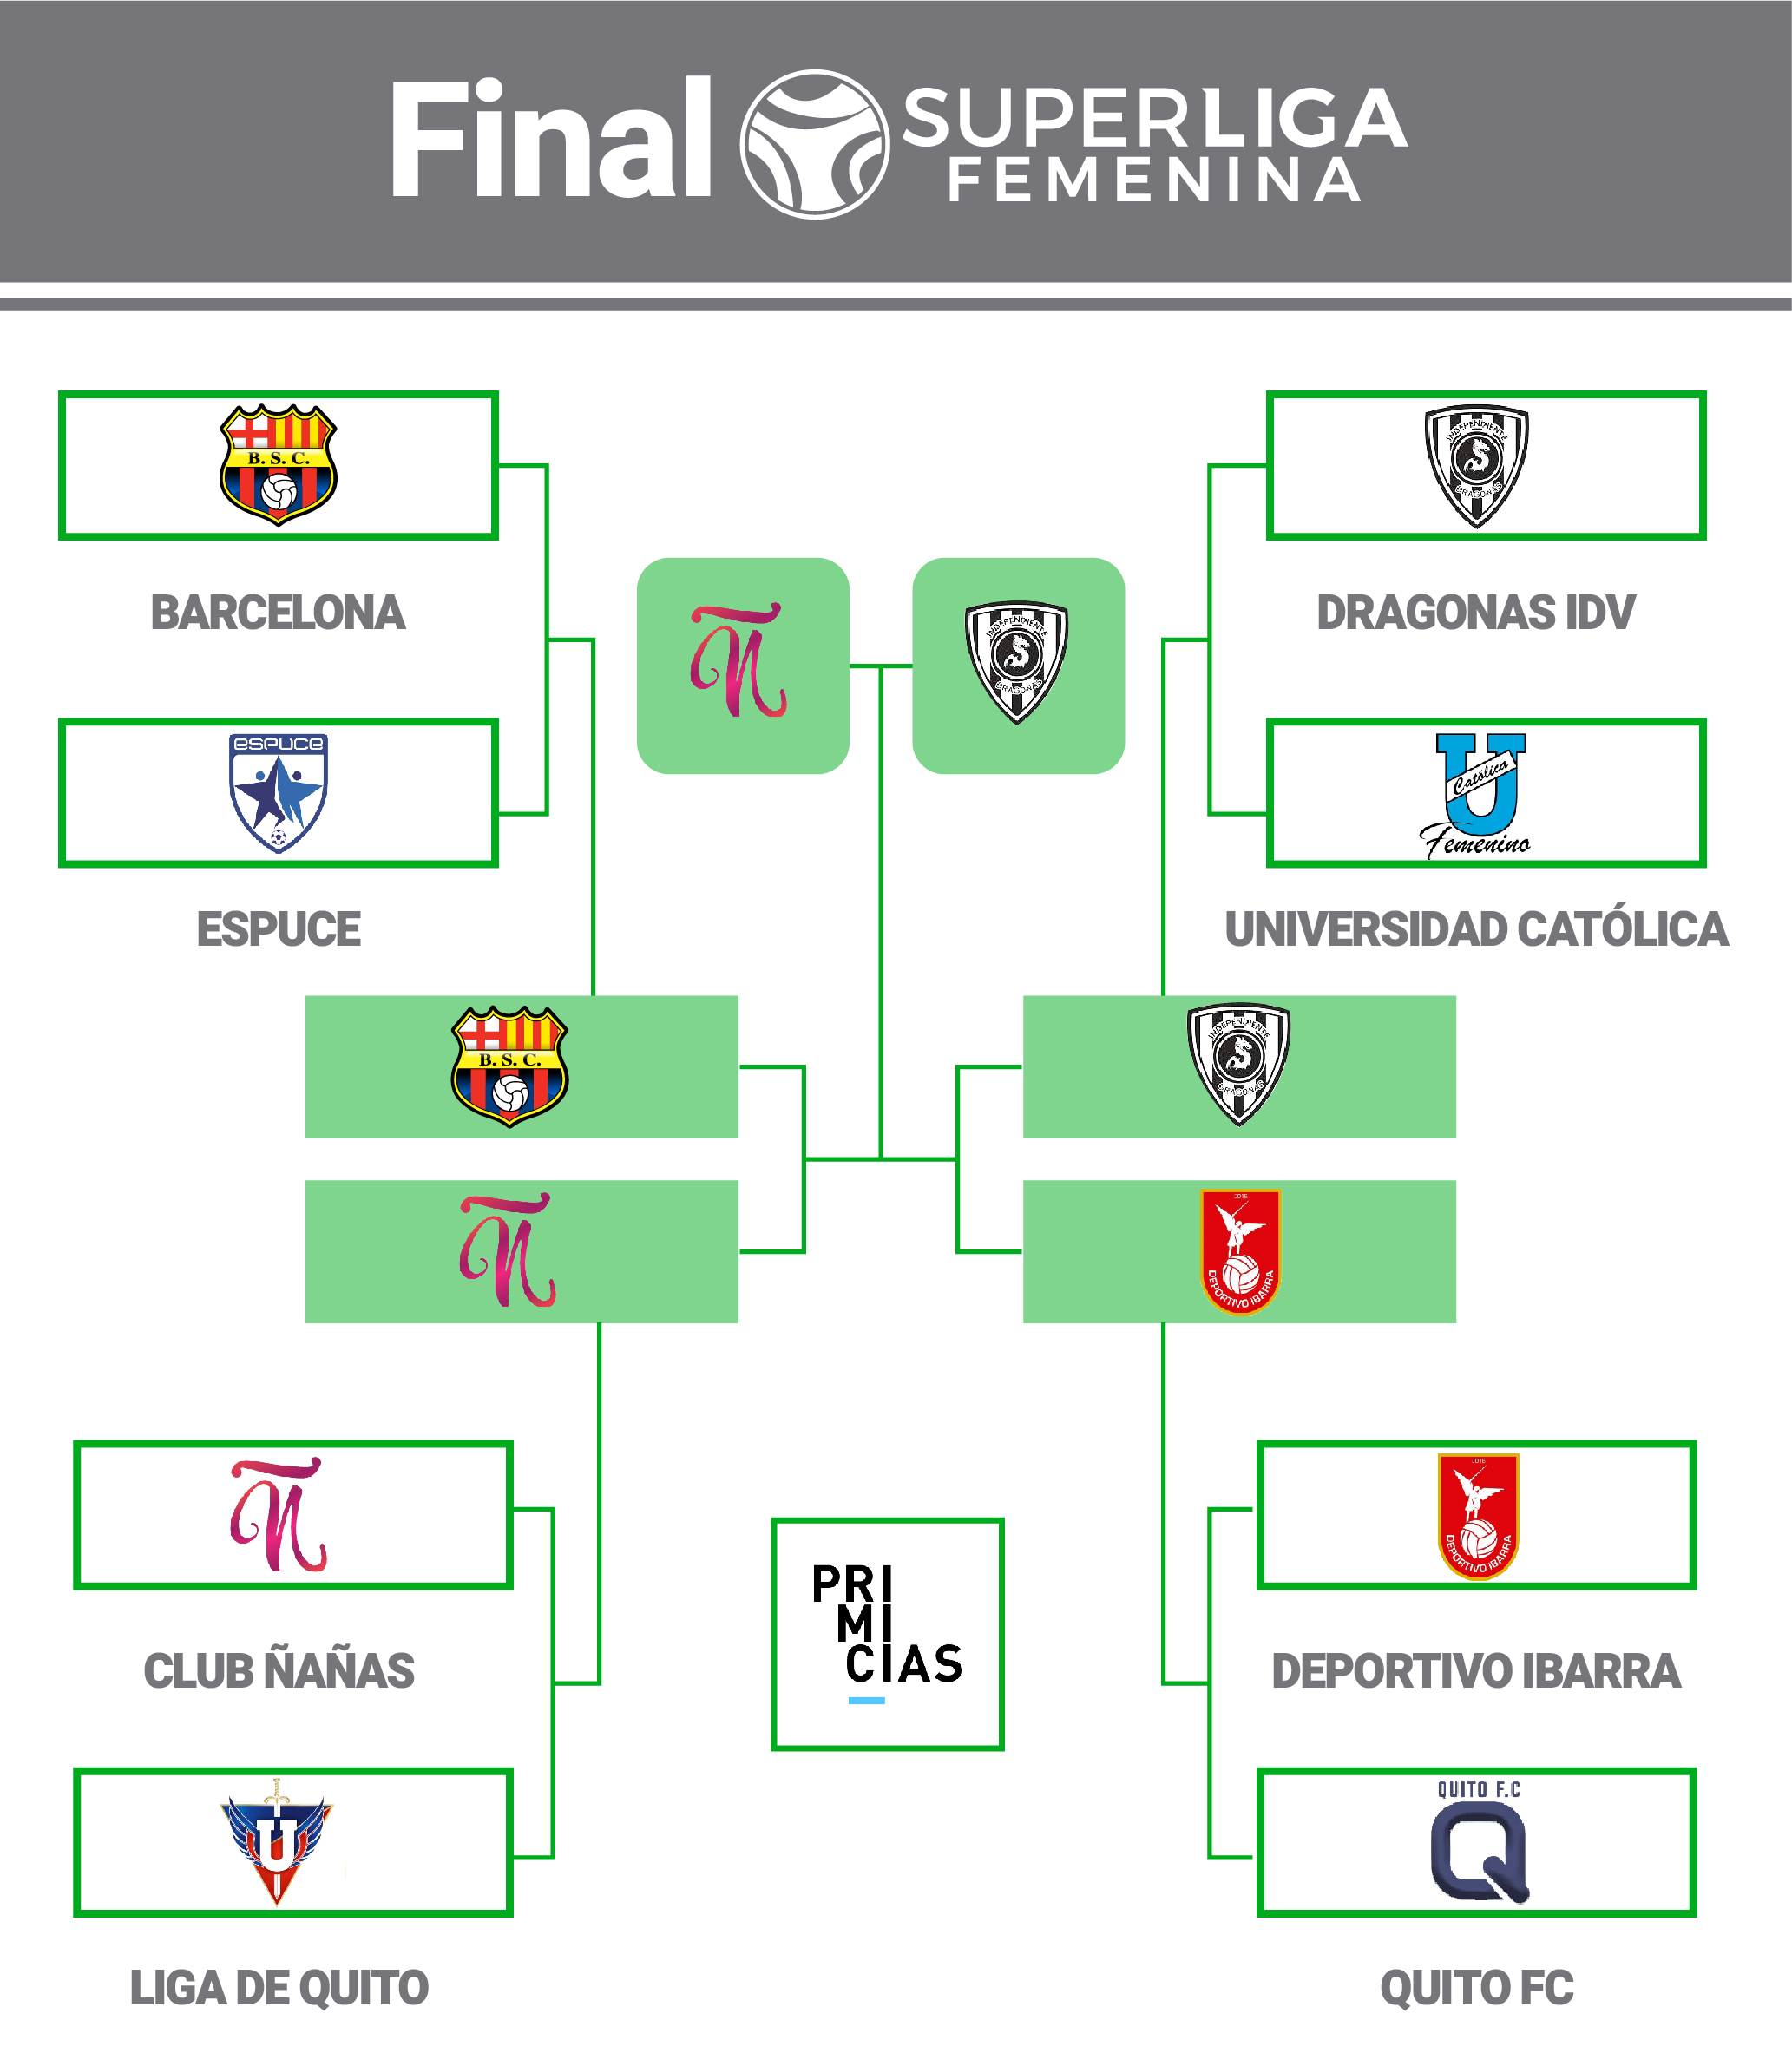 Final Superliga femenina 2022